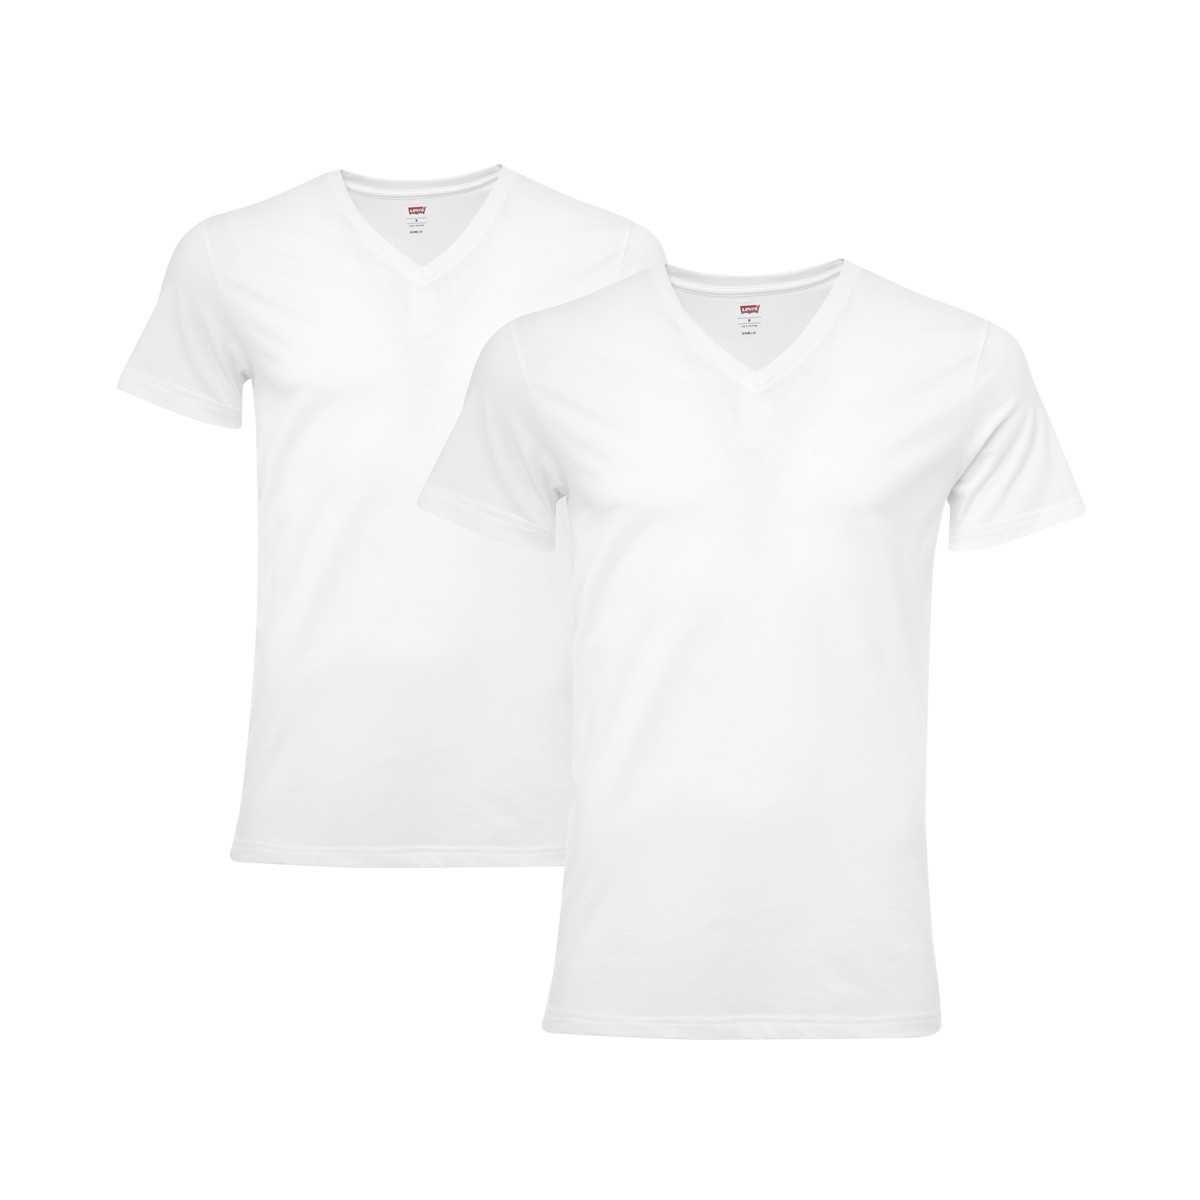 2 er Pack Levis V-Neck T-Shirt Men Herren Unterhemd V-Ausschnitt